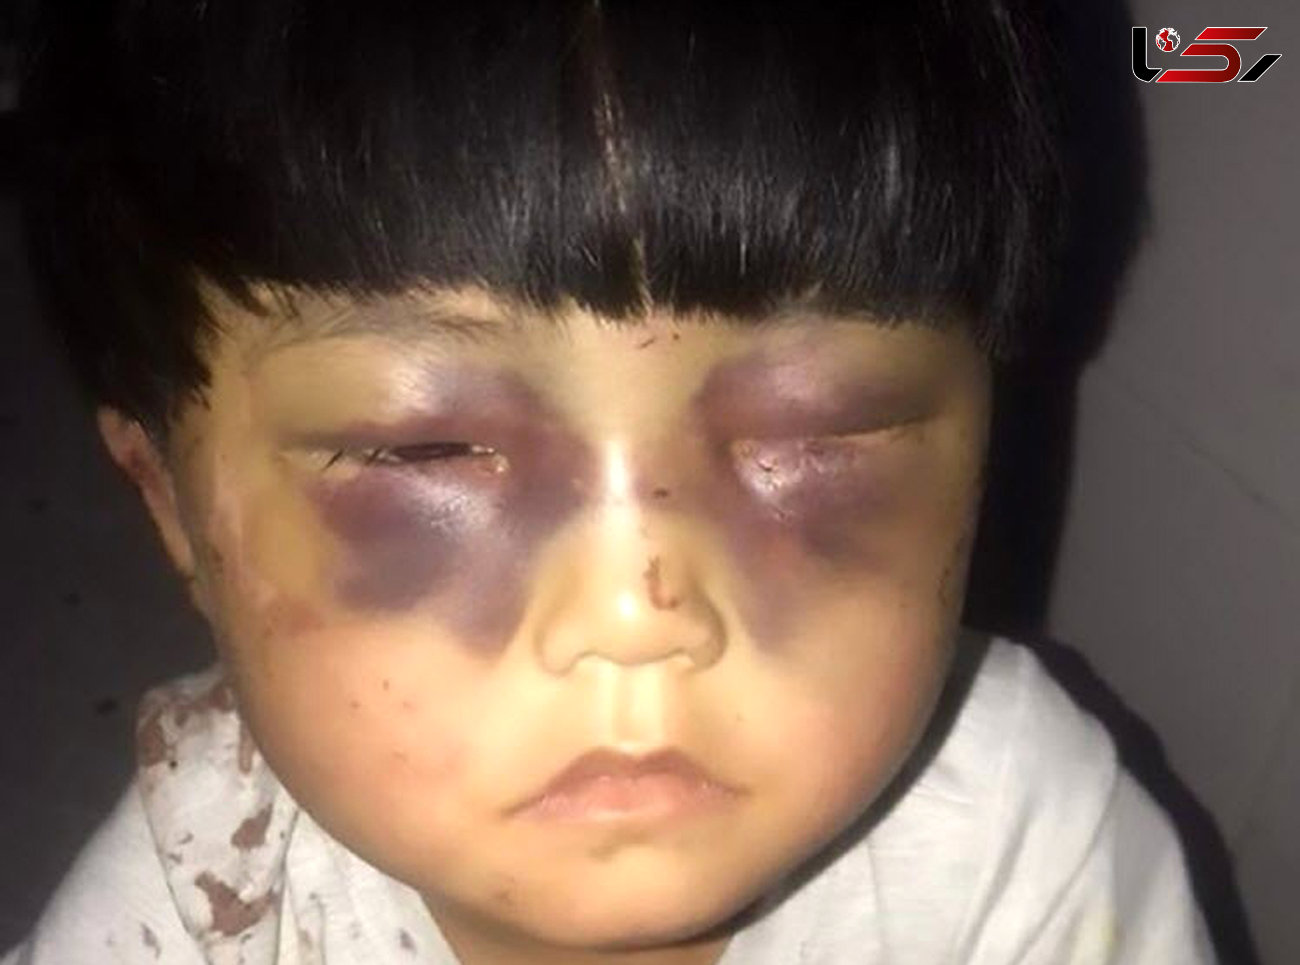 شکنجه وحشتناک دختر خردسال توسط پدرش + عکس 16+